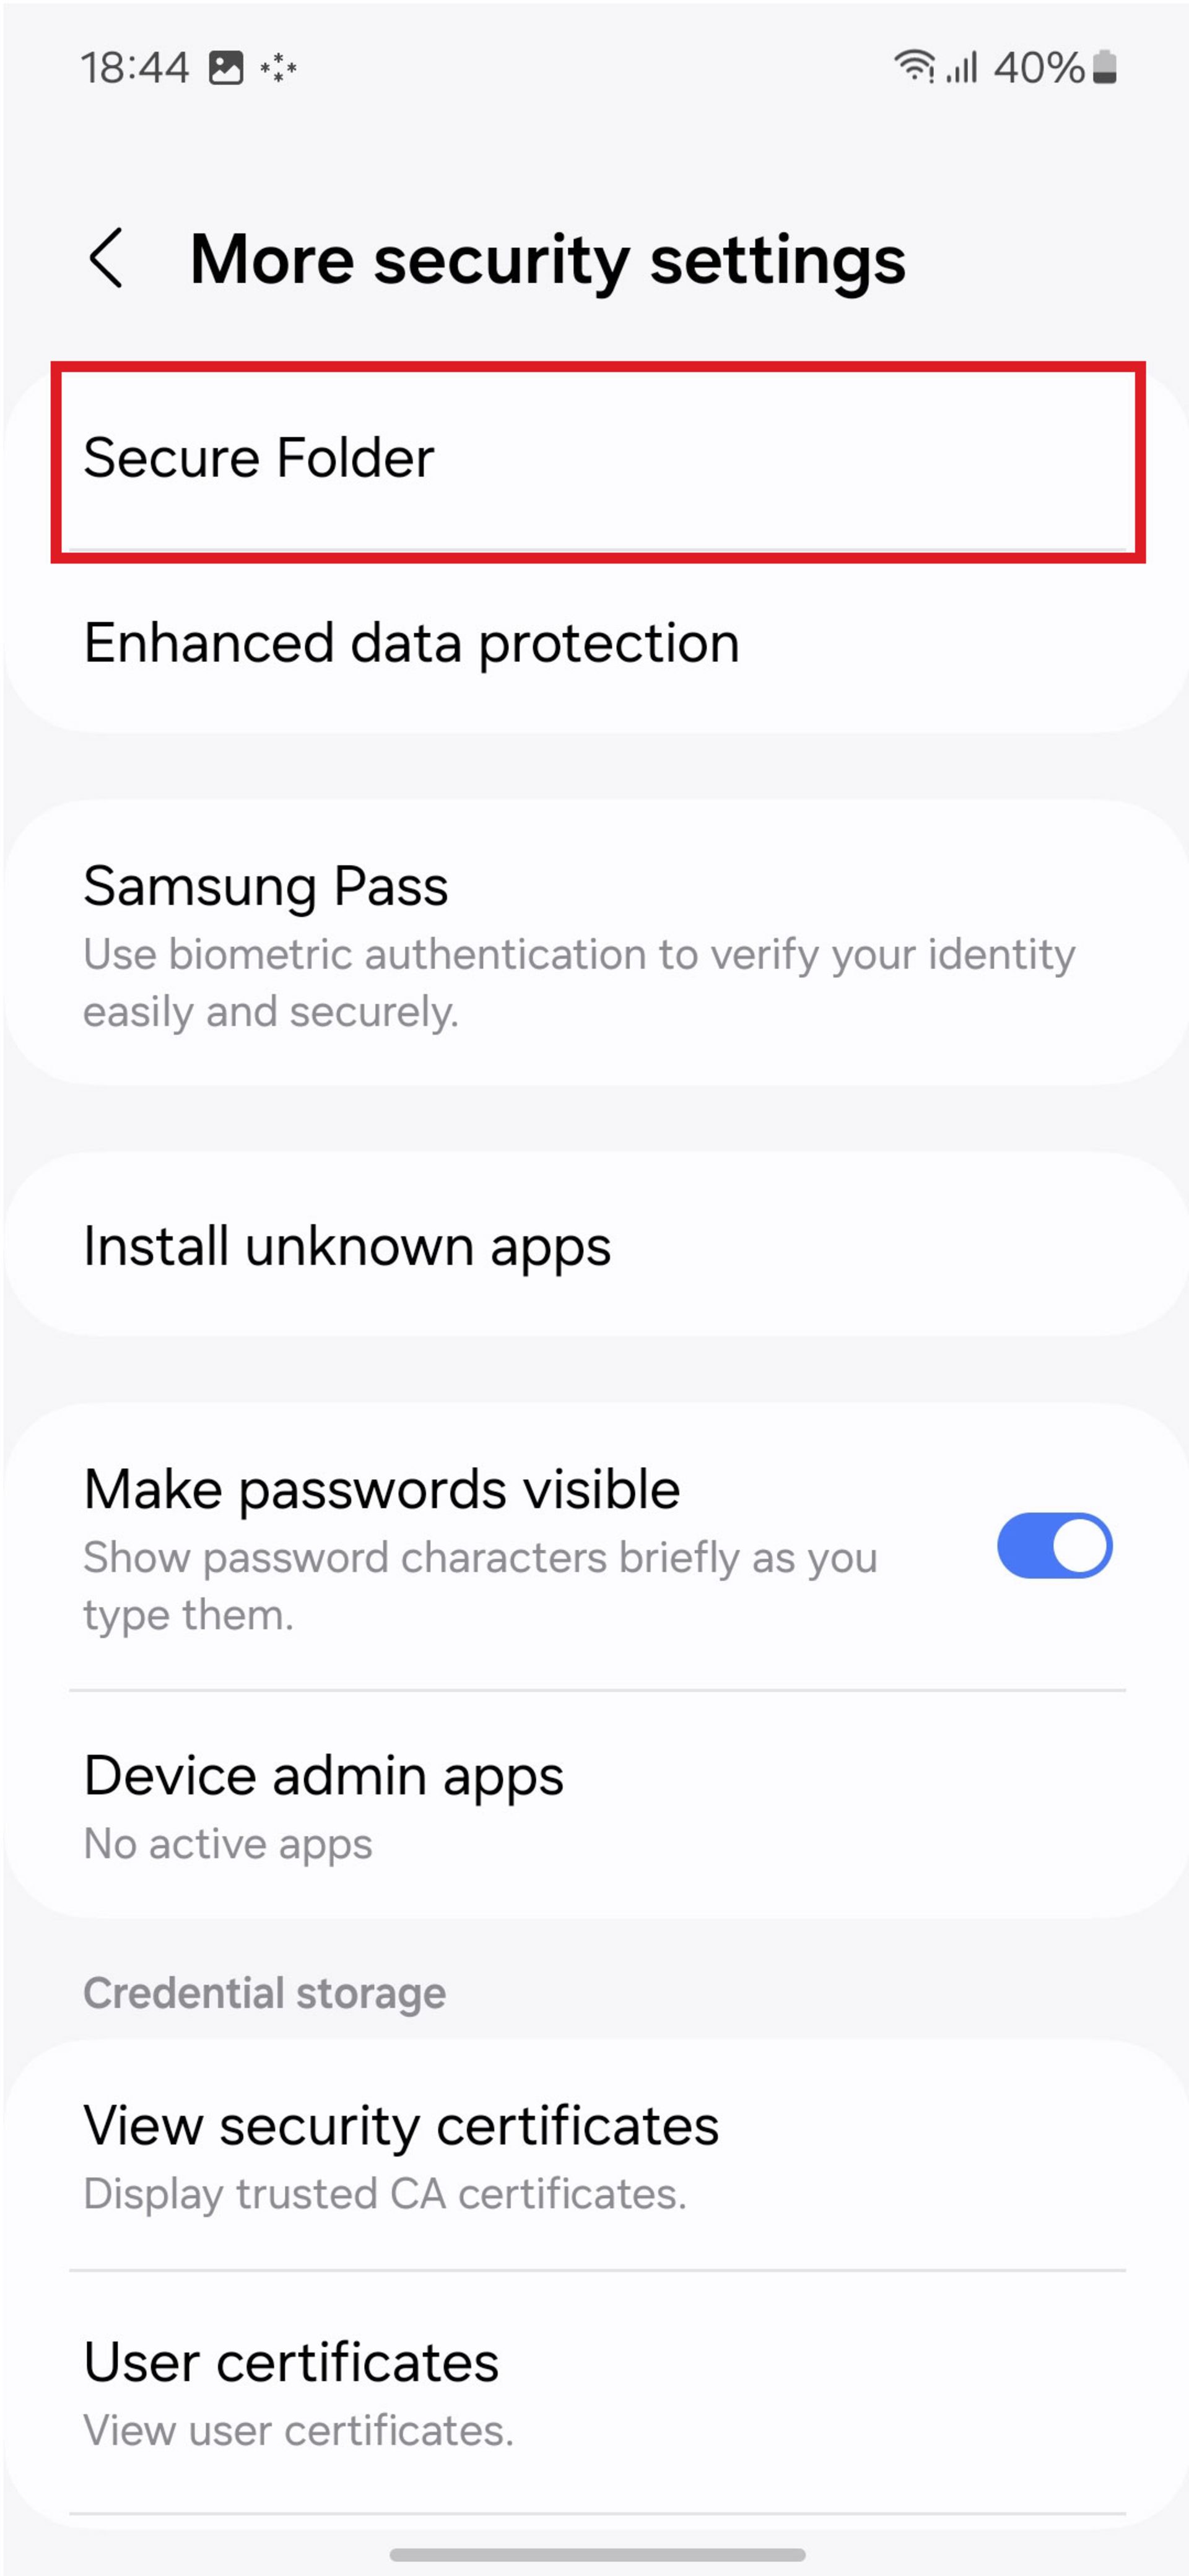 منوی More security & settings